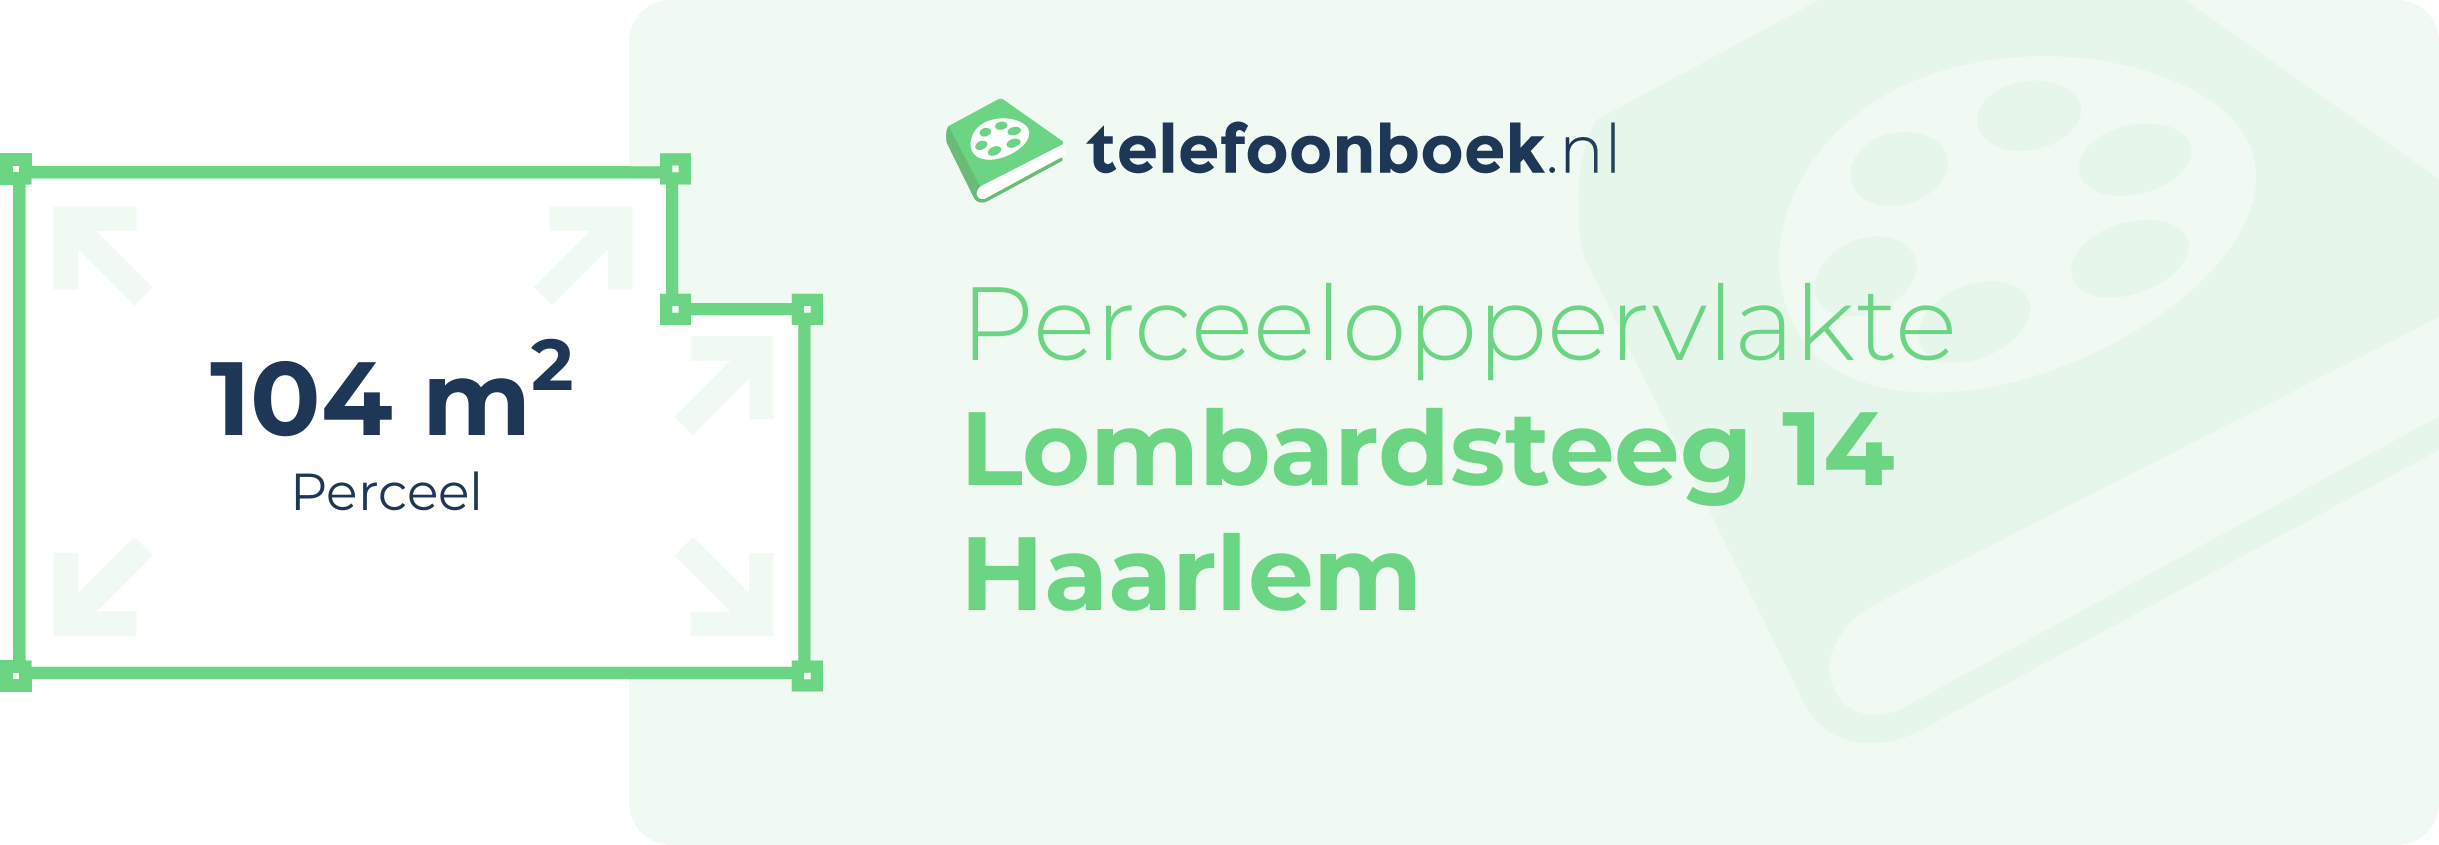 Perceeloppervlakte Lombardsteeg 14 Haarlem